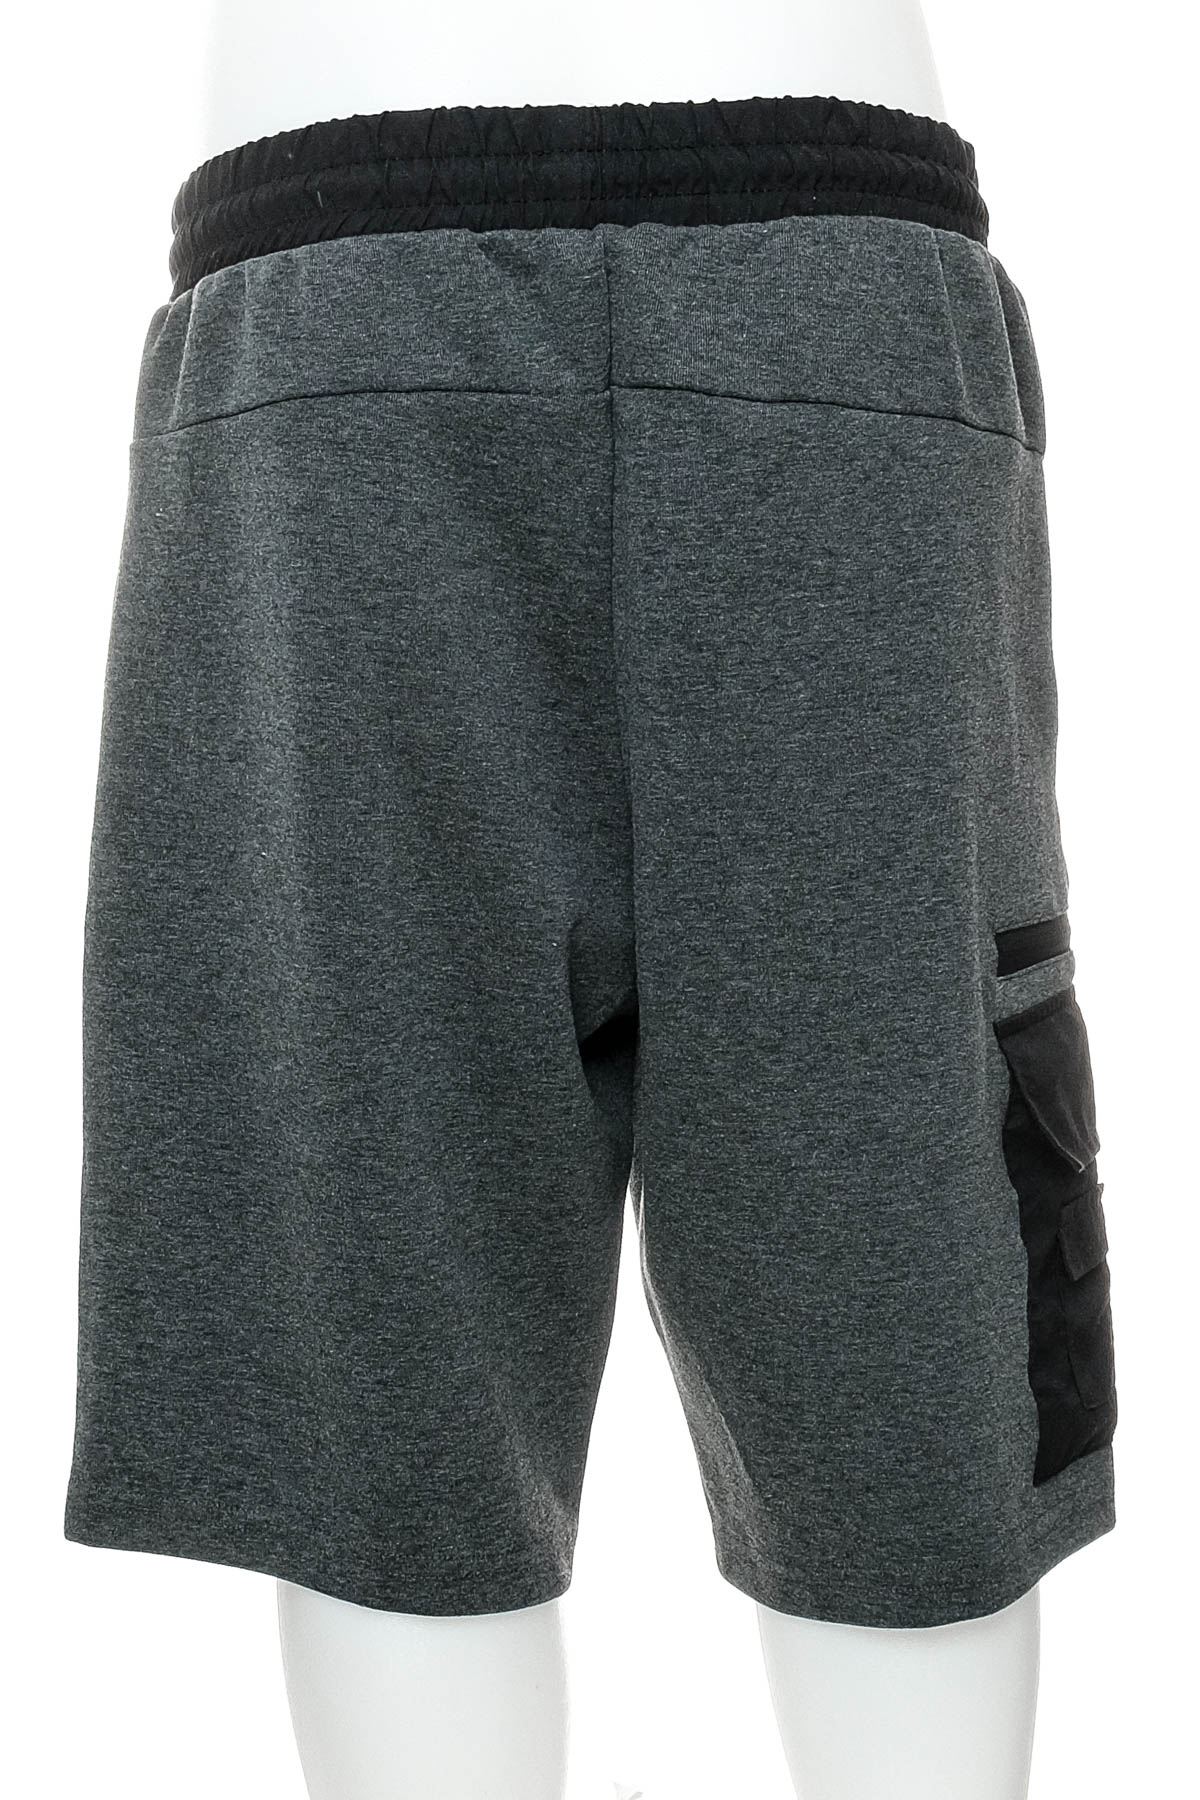 Men's shorts - CAZADOR - 1